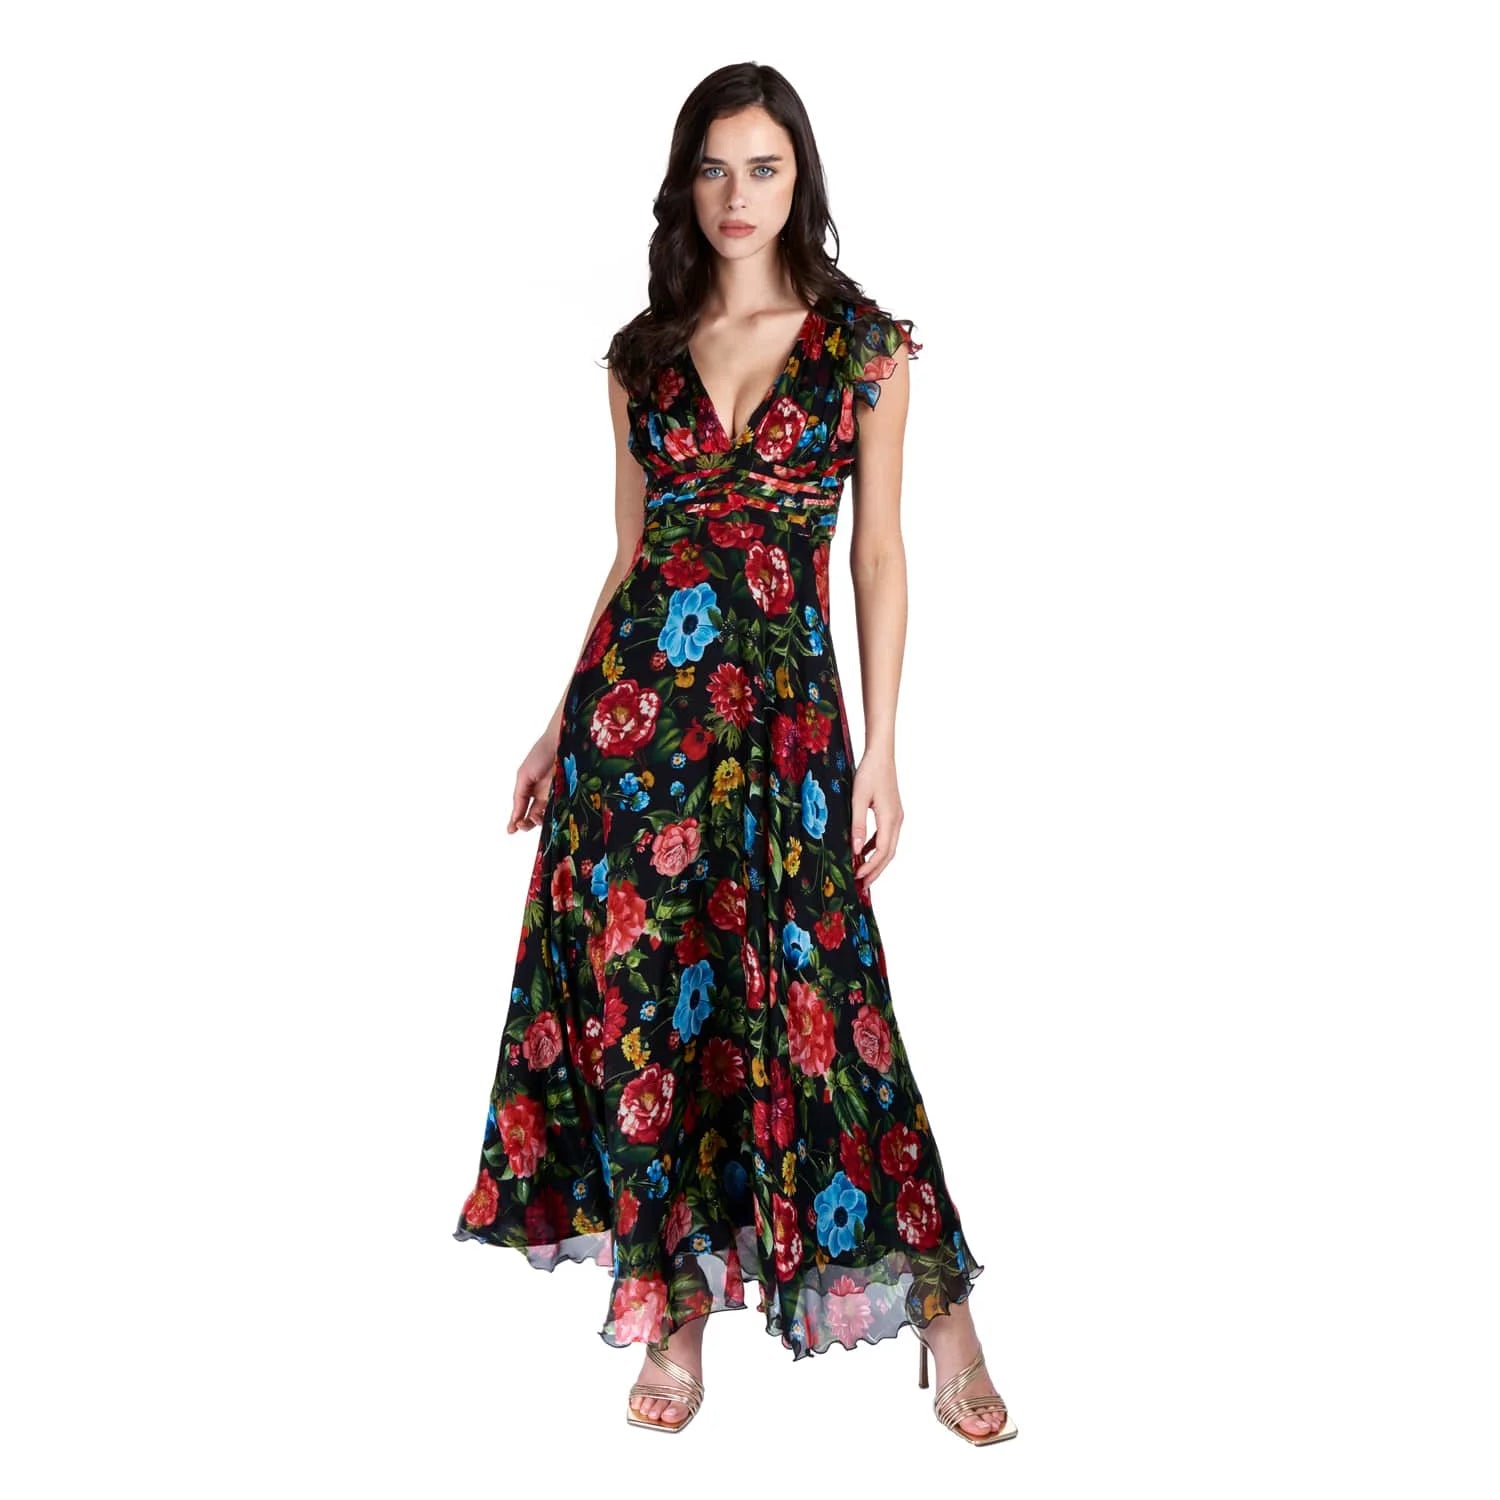 Evening Dress in Floral Motif - Dress